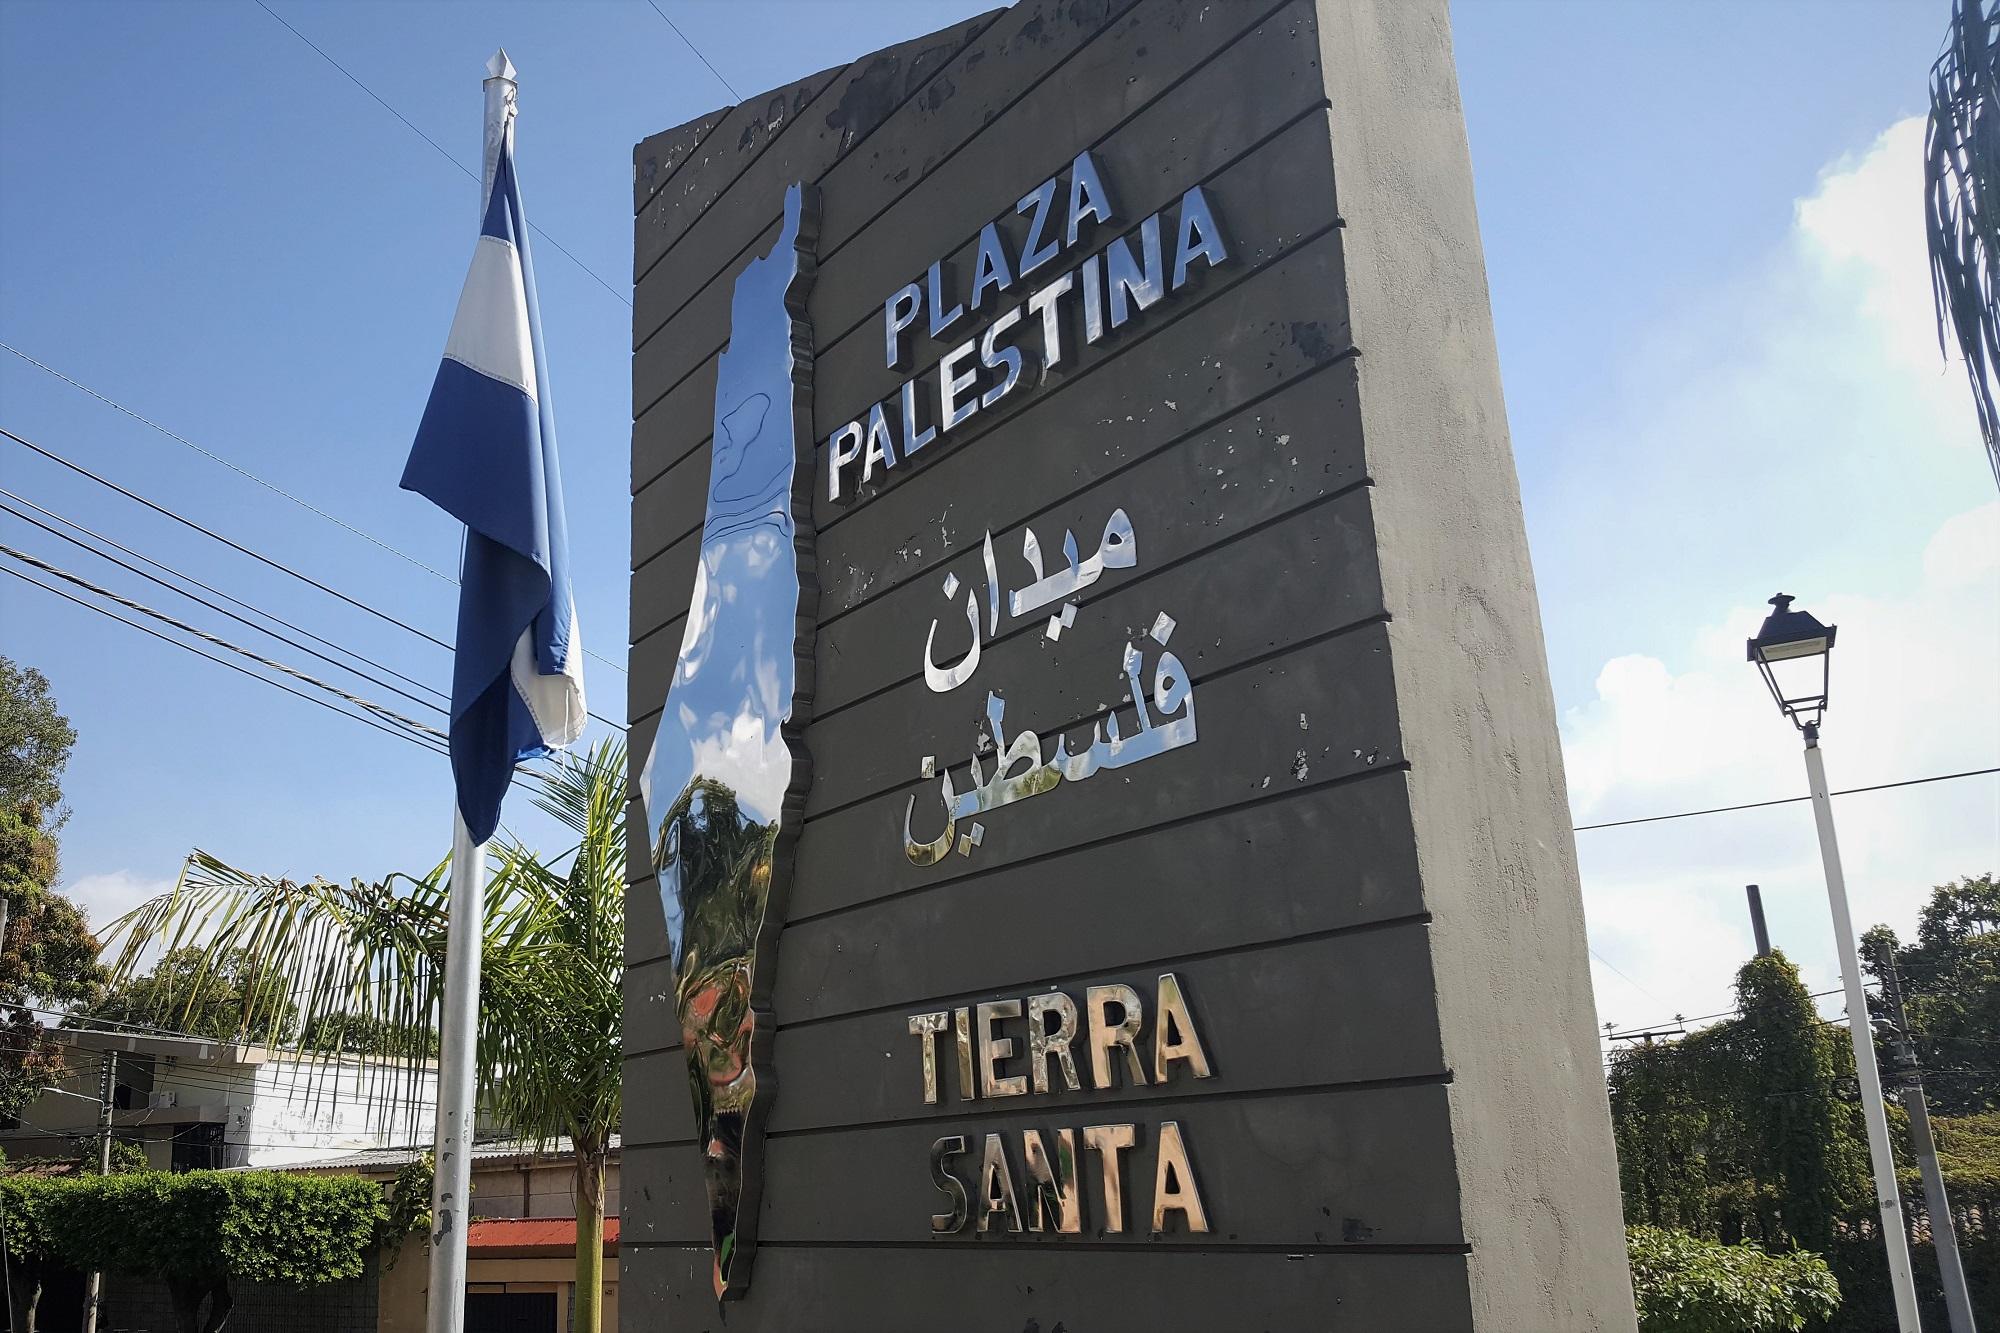 El conjunto monumental de la plaza Palestina ubicada en la colonia Escalón de San Salvador tiene como elemento central un mapa de la llamada ‘Palestina histórica’, que invisibiliza Israel. Foto archivo El Faro.